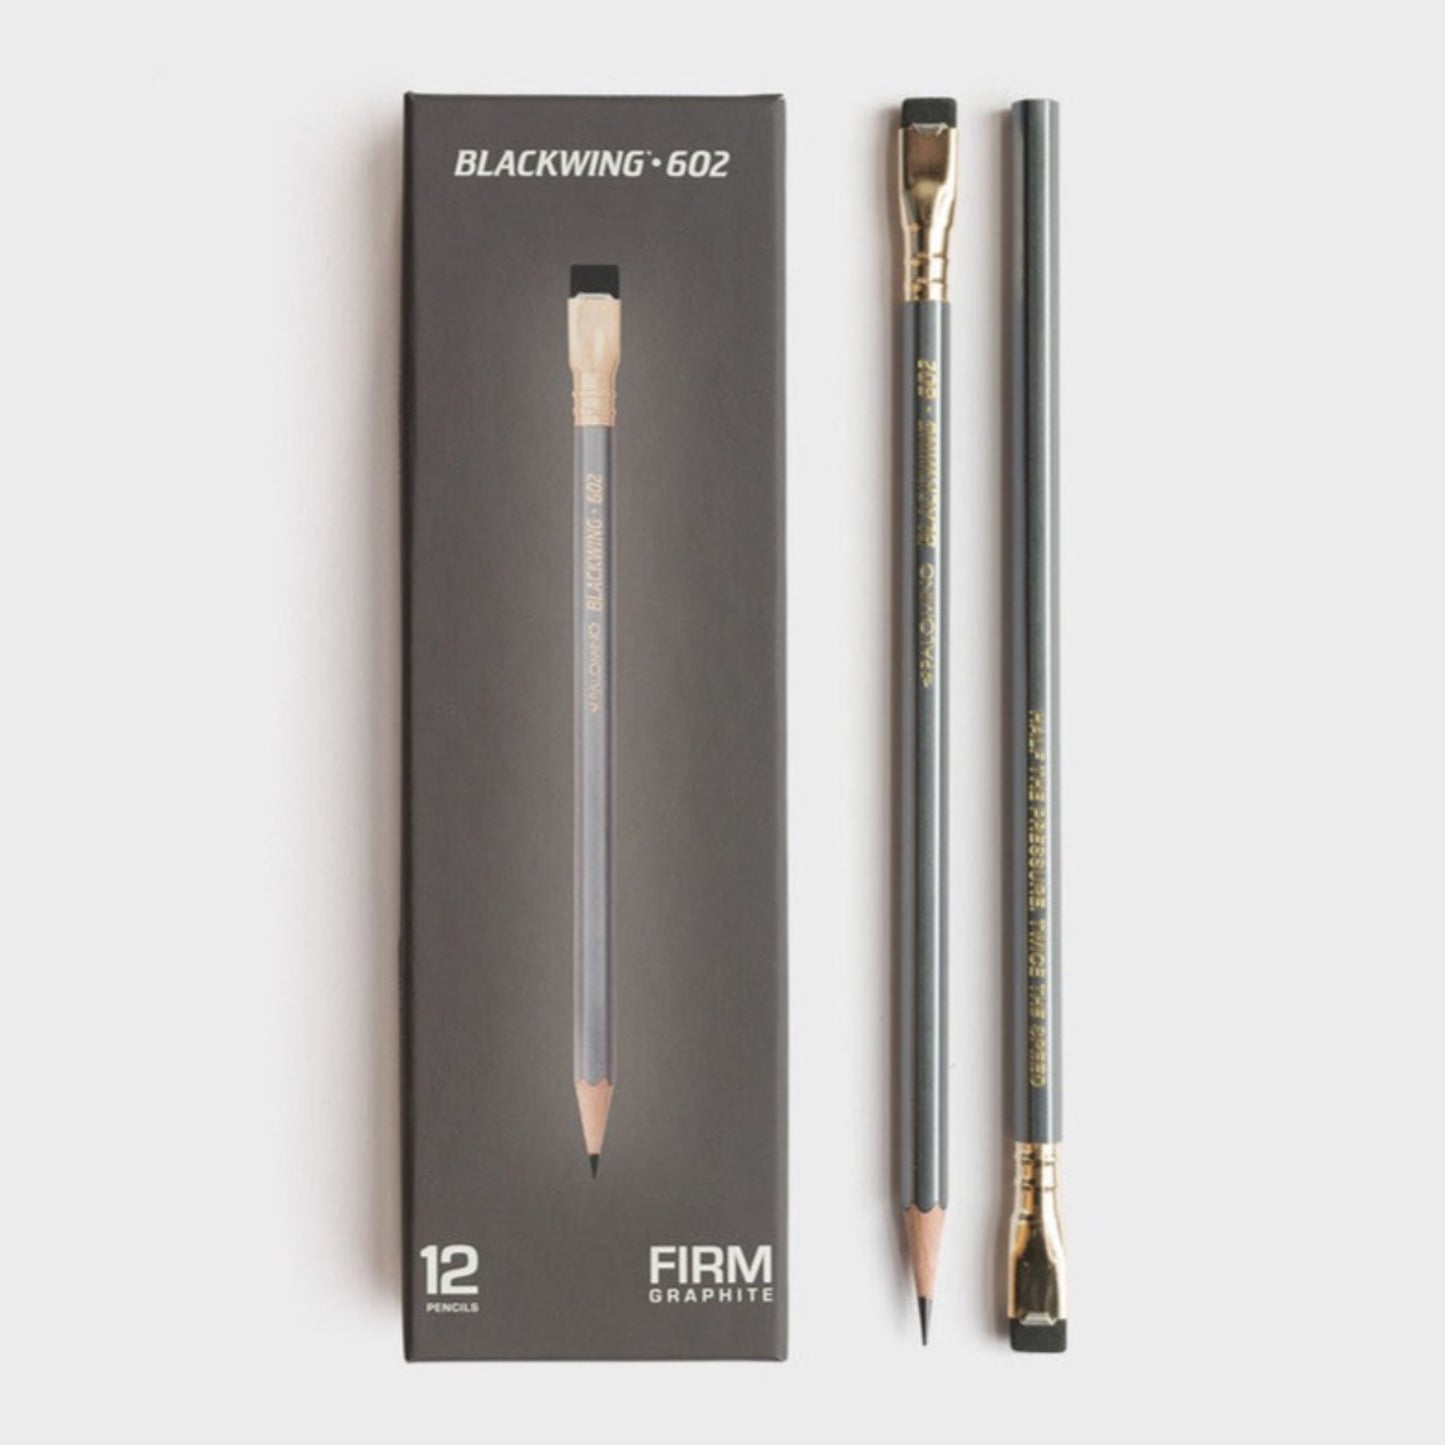 Blackwing - 602 Graphite Pencils - Grierson Studio